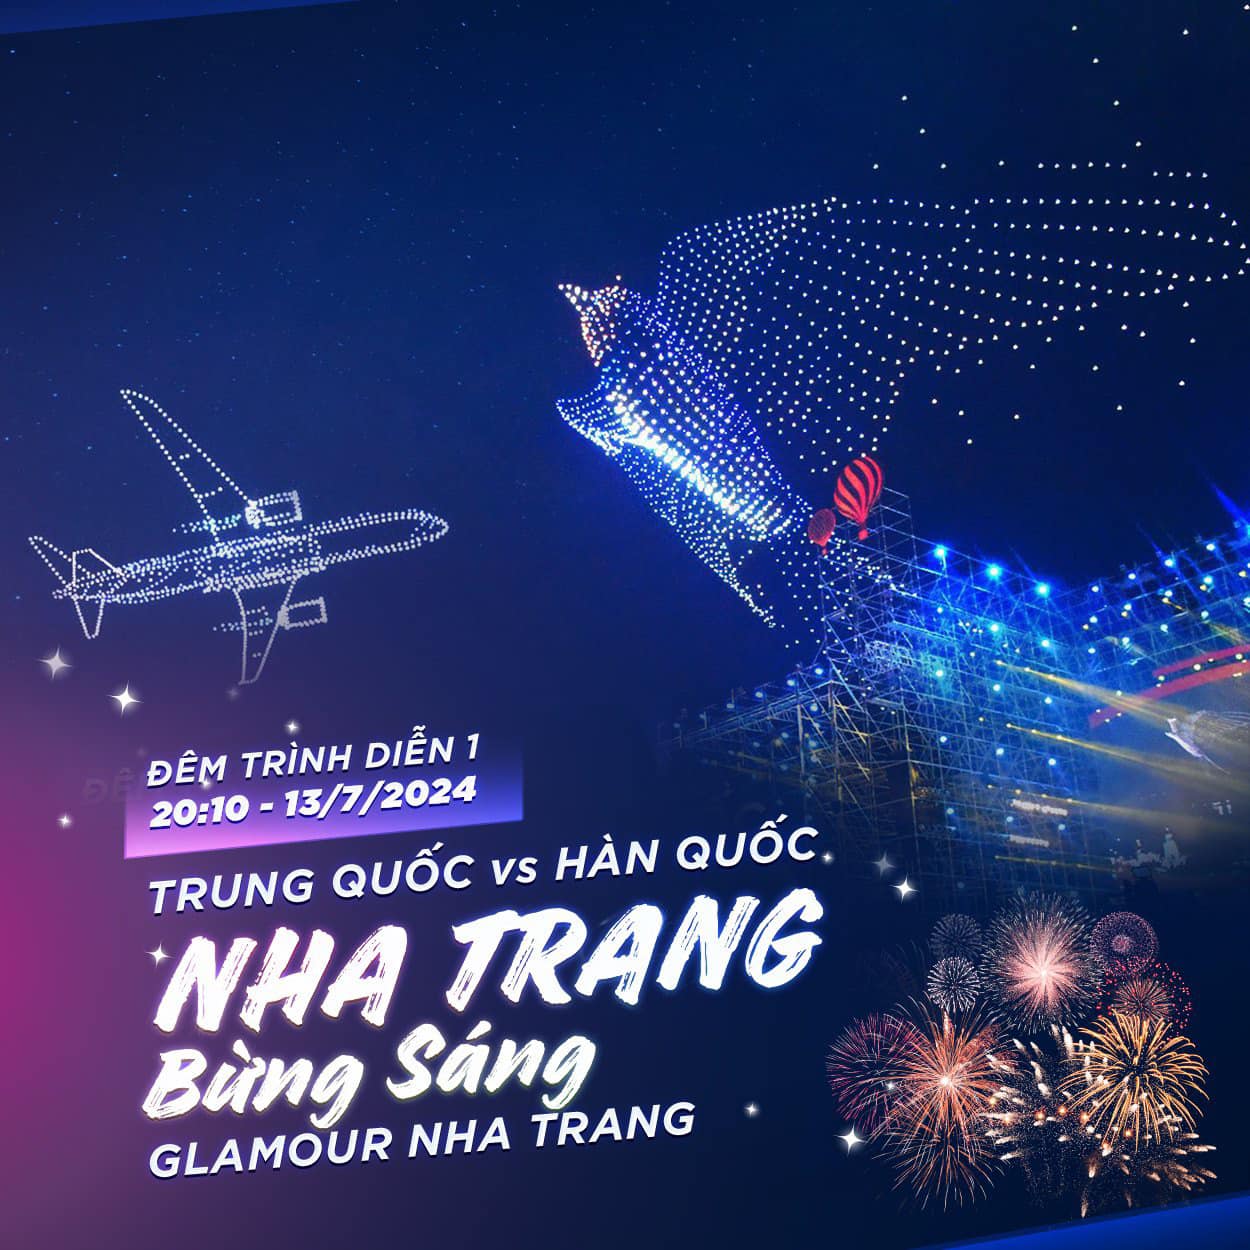 Đêm khai mạc lễ hội sẽ có chủ đề &quot;Nha Trang bừng sáng&quot; với hai đội thi Trung Quốc và Hàn Quốc.&amp;nbsp;